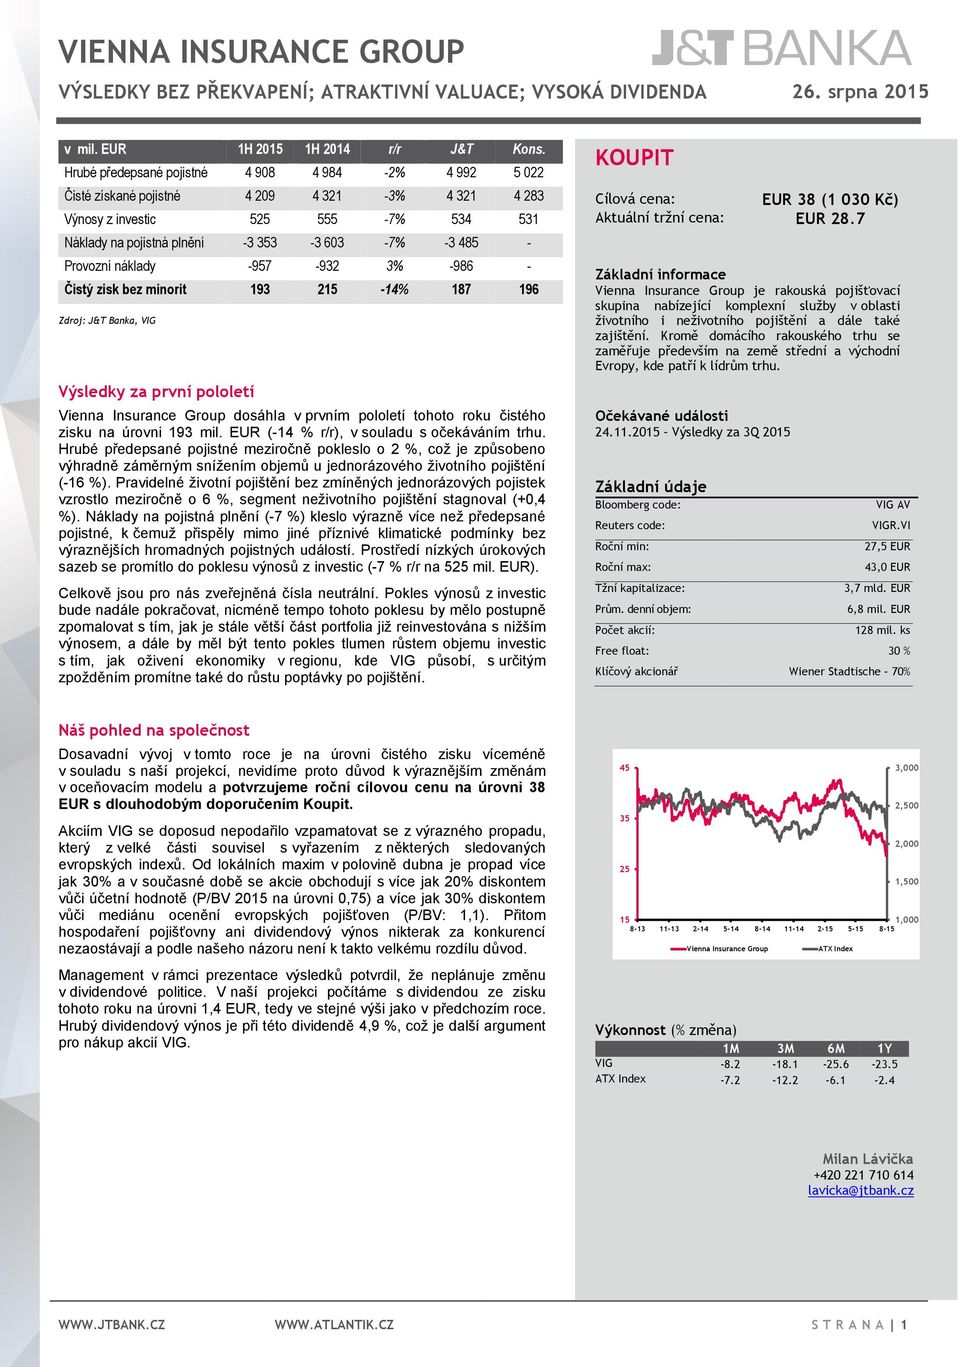 Provozní náklady -957-932 3% -986 - Čistý zisk bez minorit 193 215-14% 187 196 Zdroj: J&T Banka, VIG Výsledky za první pololetí Vienna Insurance Group dosáhla v prvním pololetí tohoto roku čistého